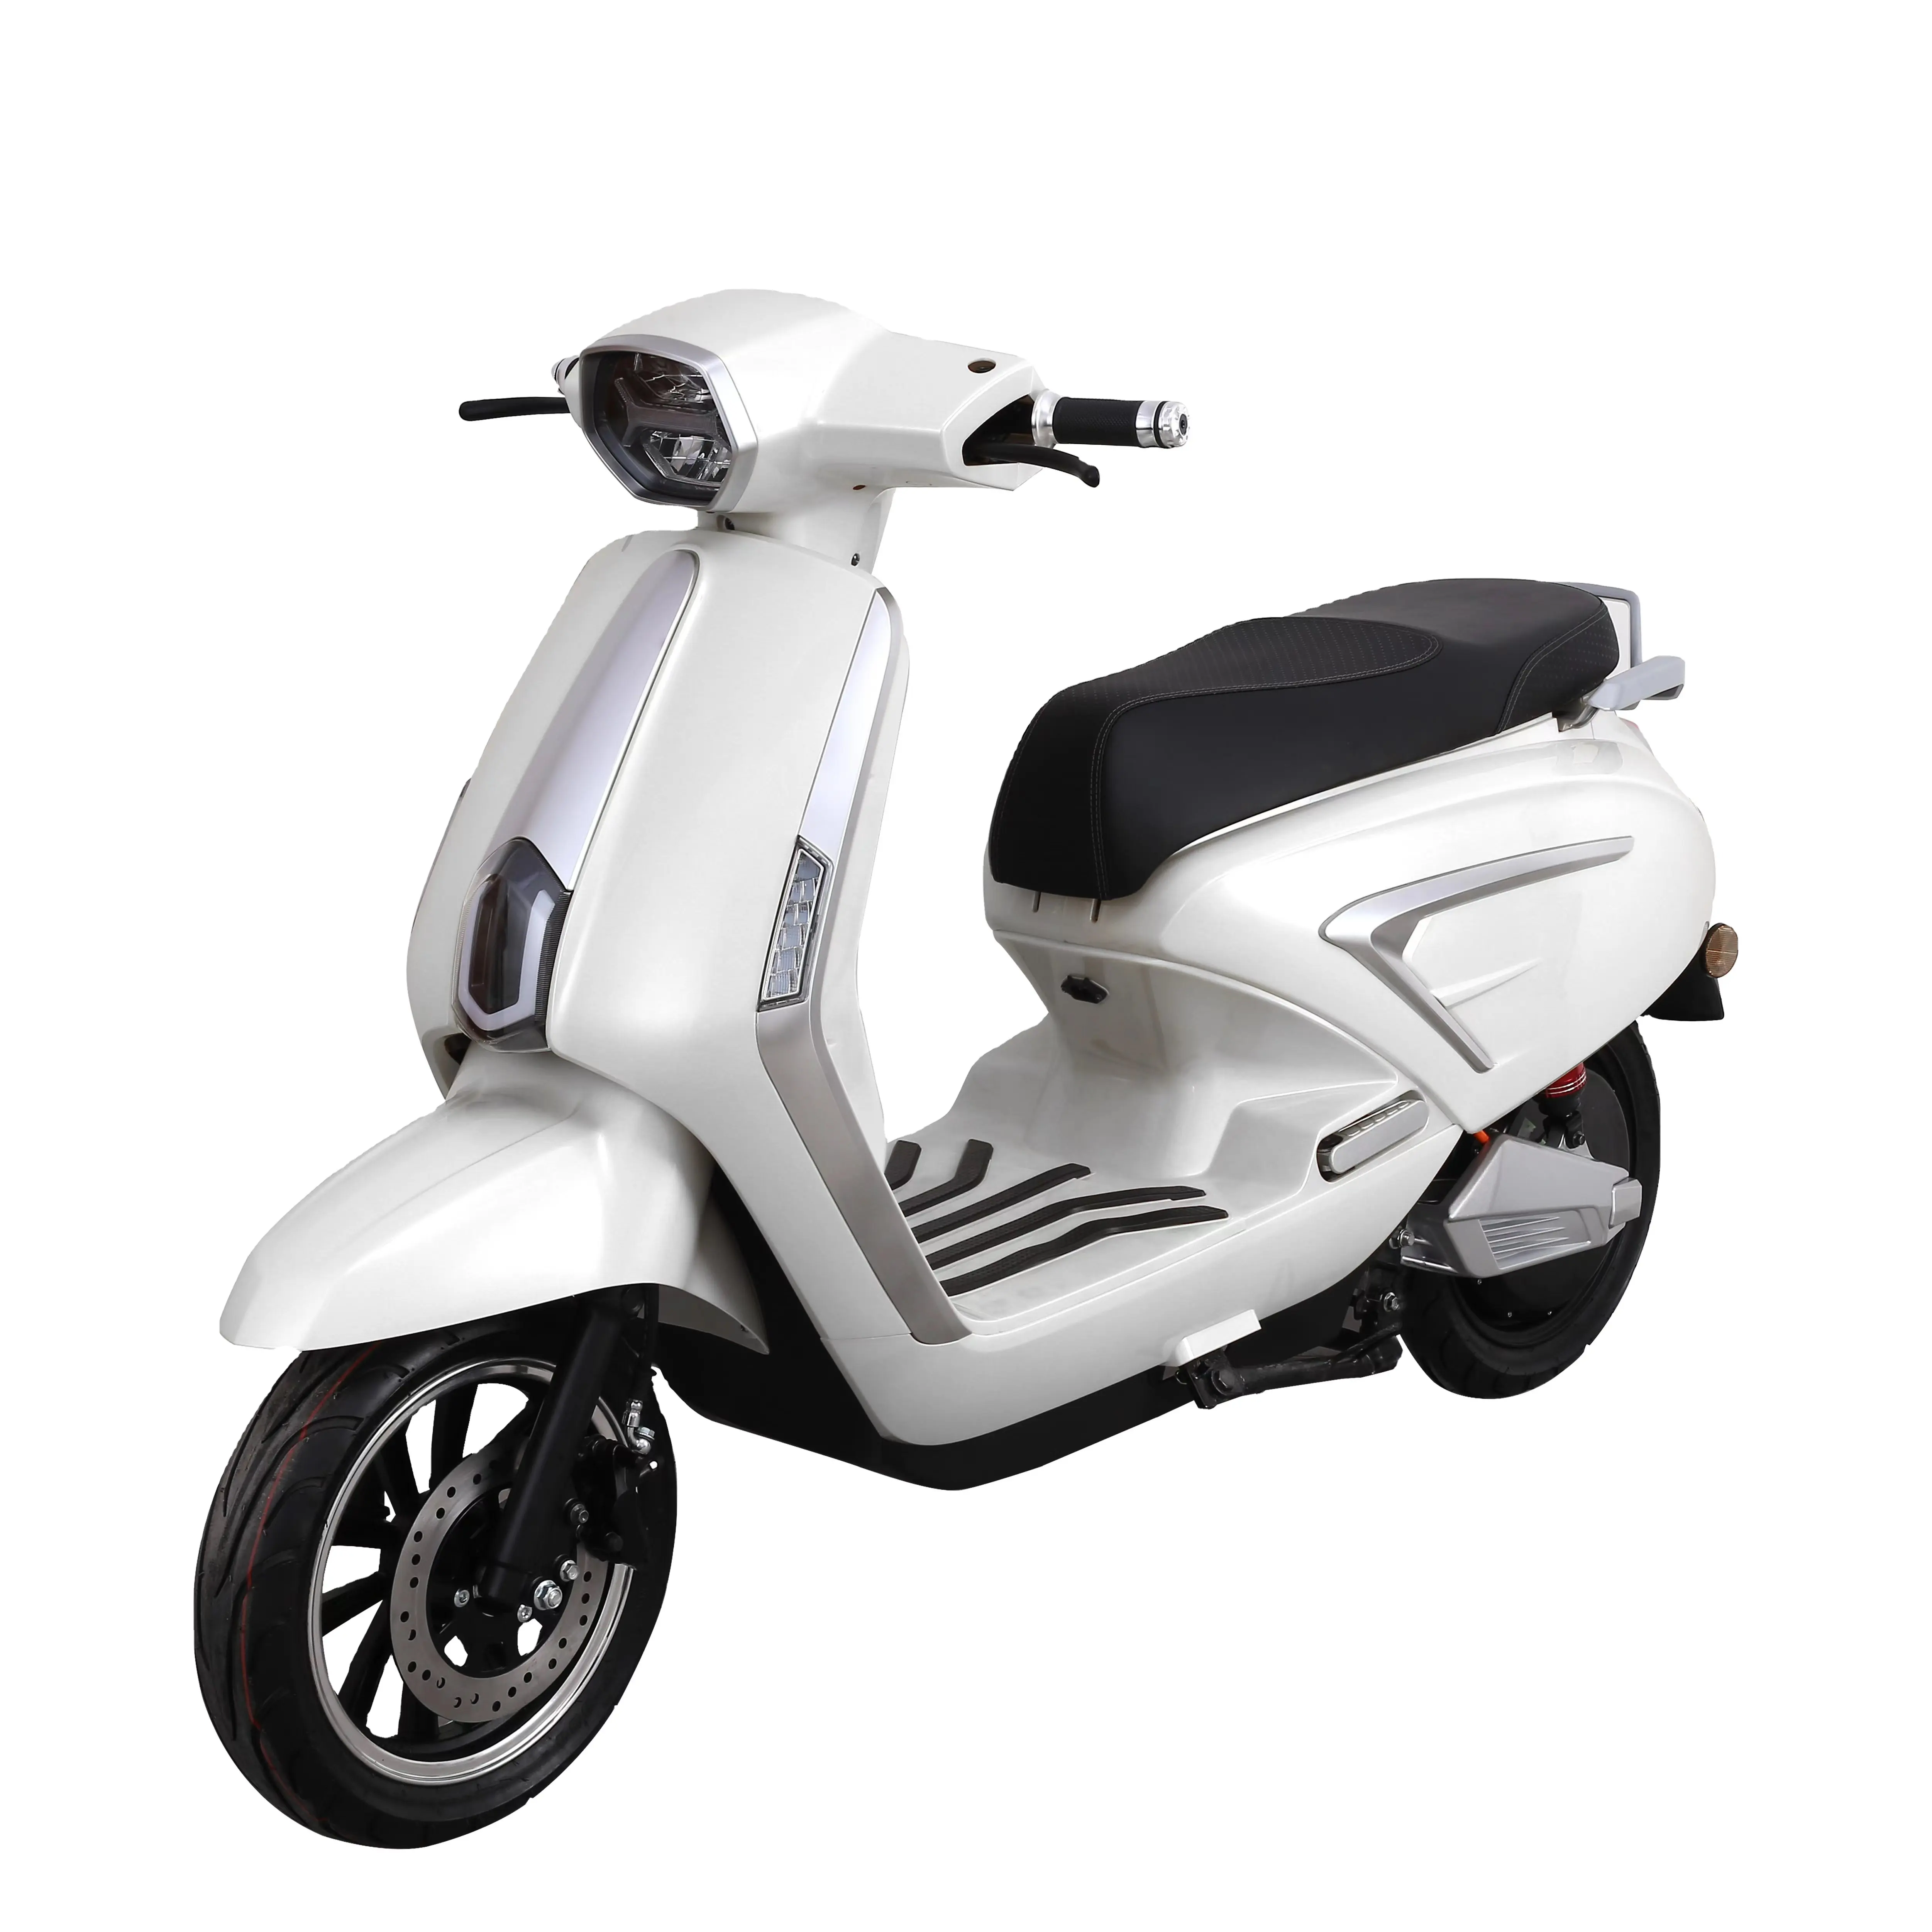 Neueste Custom Motor 72V 32AH Motos Deportivas 600cc Tailg elektrische Offroad-Motorräder für Erwachsene